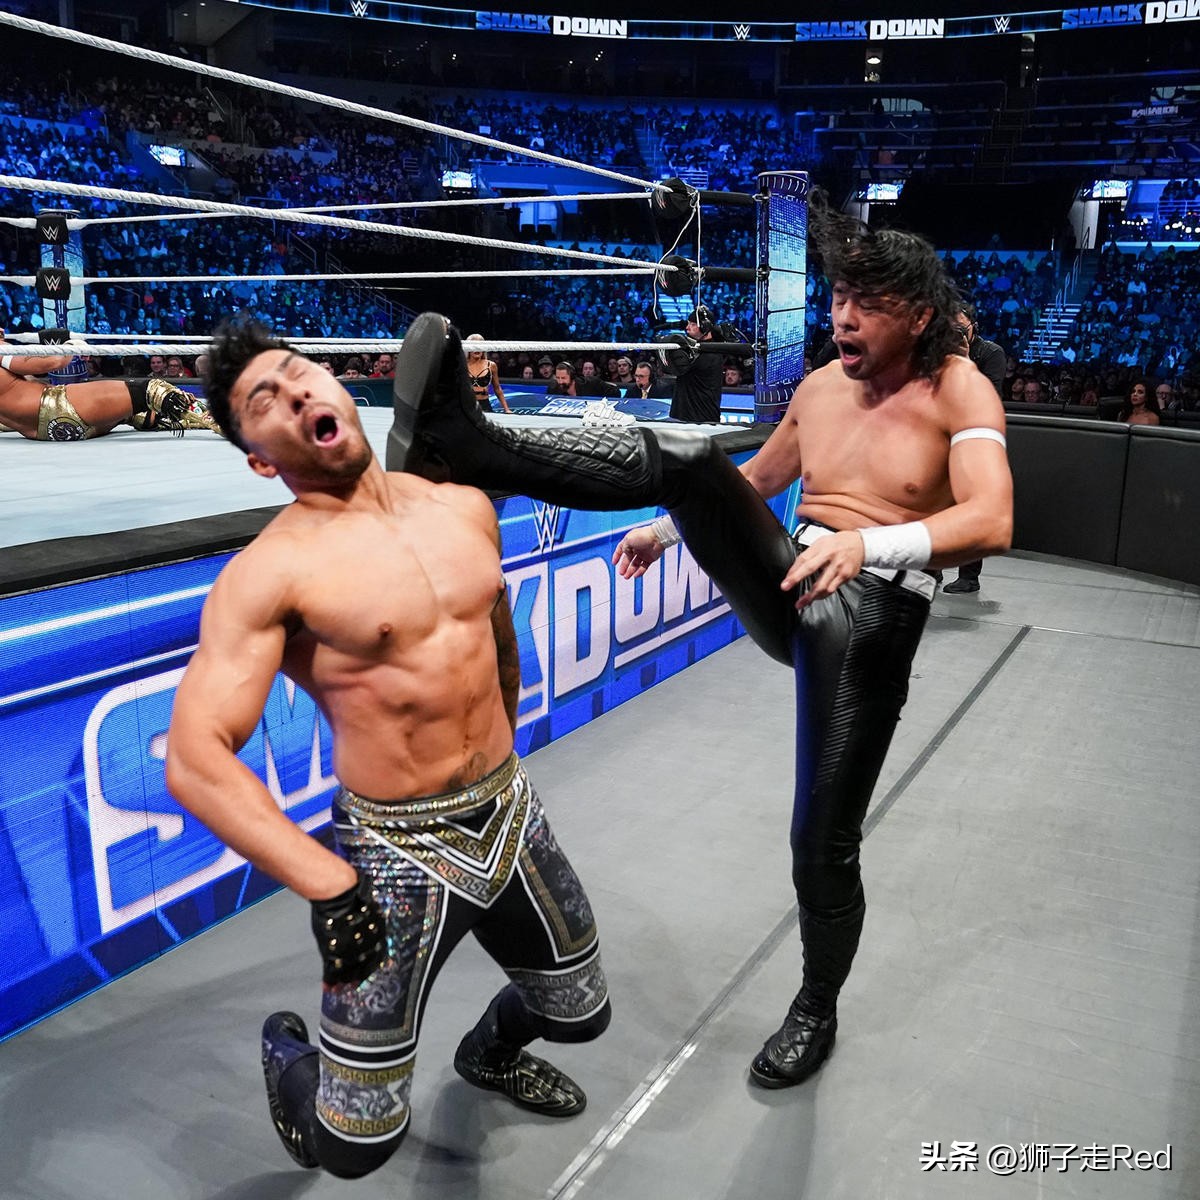 小狮子和克罗斯因伤缺席(WWE第1210期Smackdown节目2022年10月28日赛况及精选照片集)